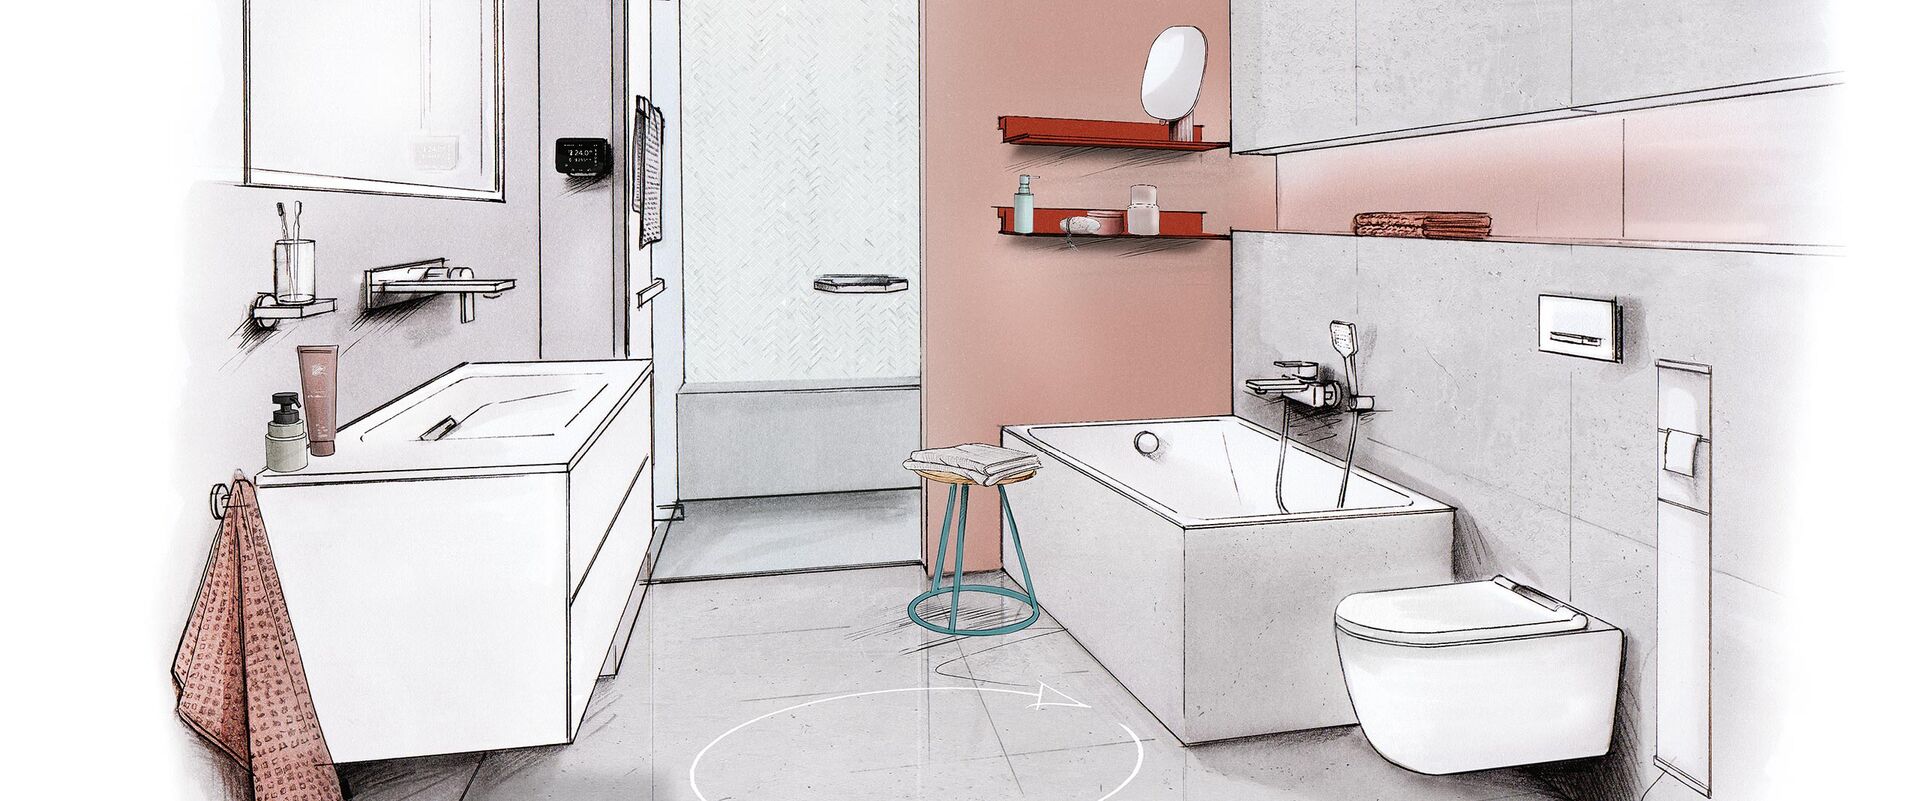 Badplanungszeichnung zu einem kleinen, schlauchförmigen Bad von Stephan Pöppelmann mit Raumsparwanne, Waschbecken, WC und begehbarer Dusche.